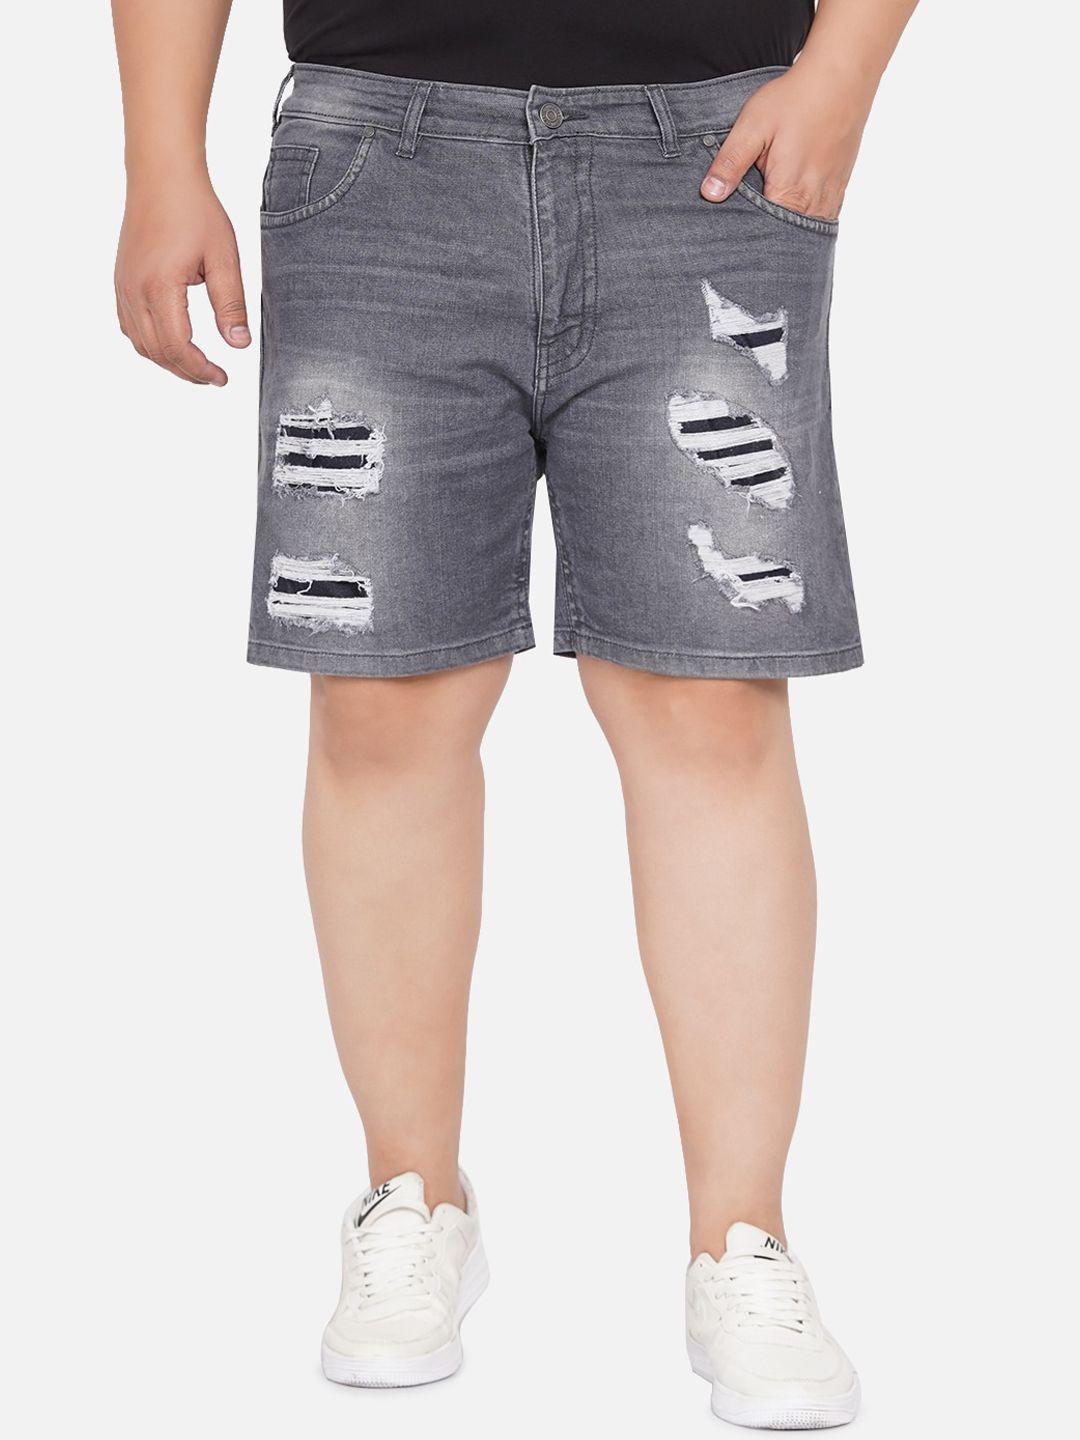 john pride men grey printed denim shorts